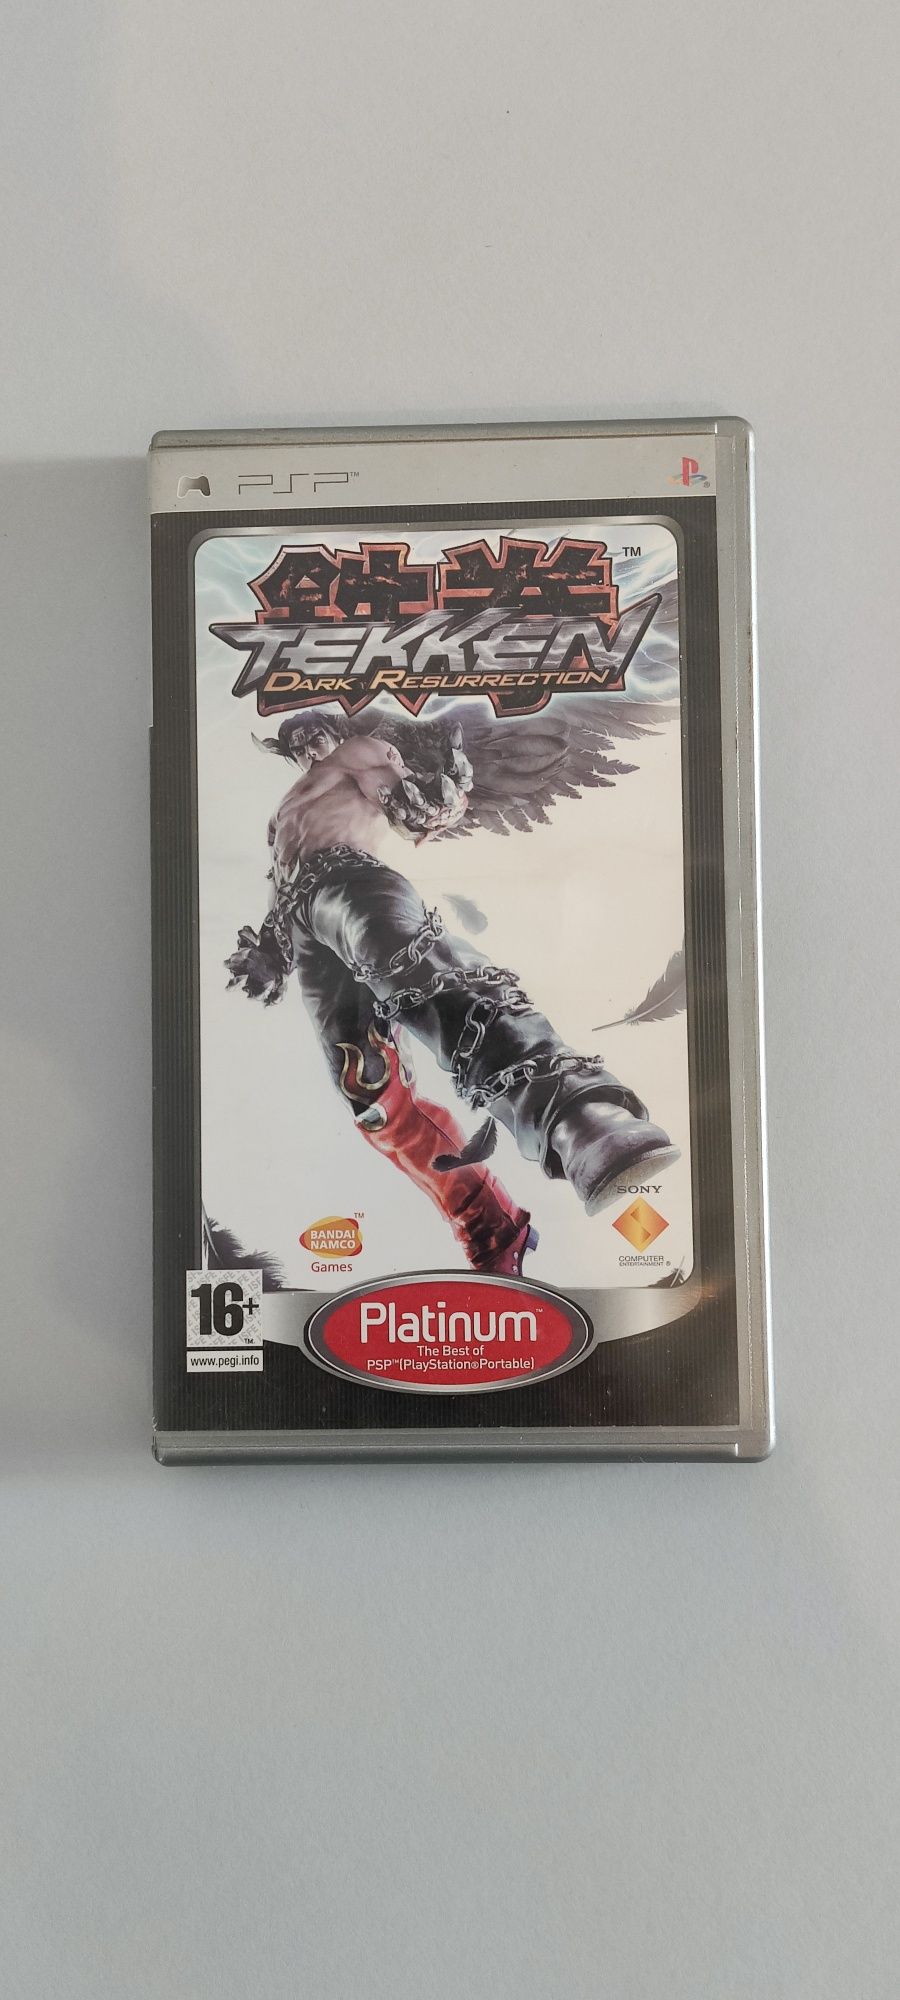 Tekken 5 Dark Resurrection PSP